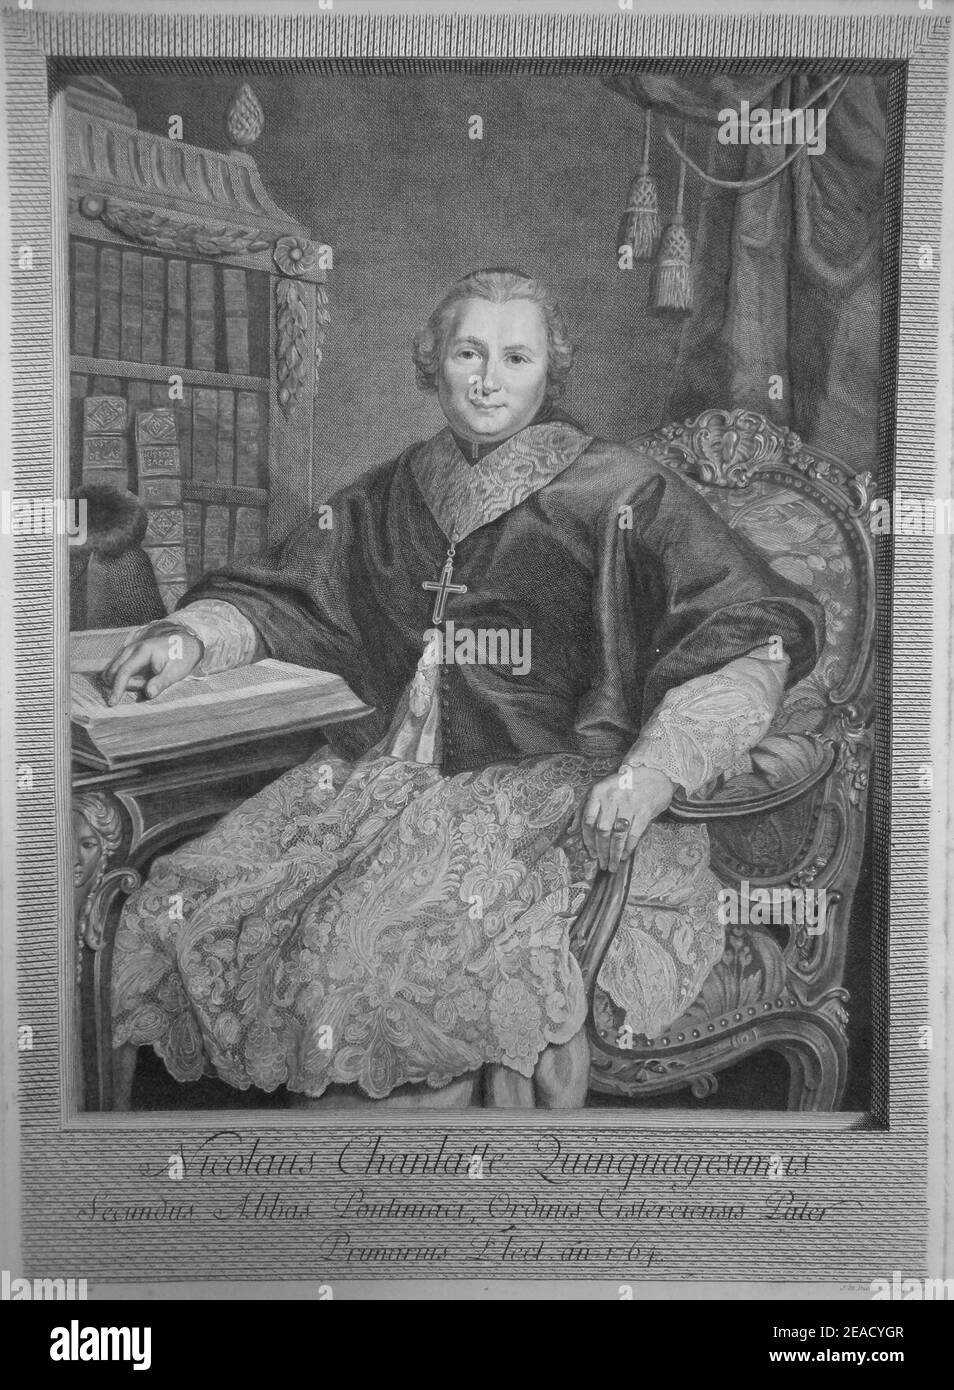 Nicolas Chanlatte, 1764-1788 abbe de Pontigny. Stockfoto